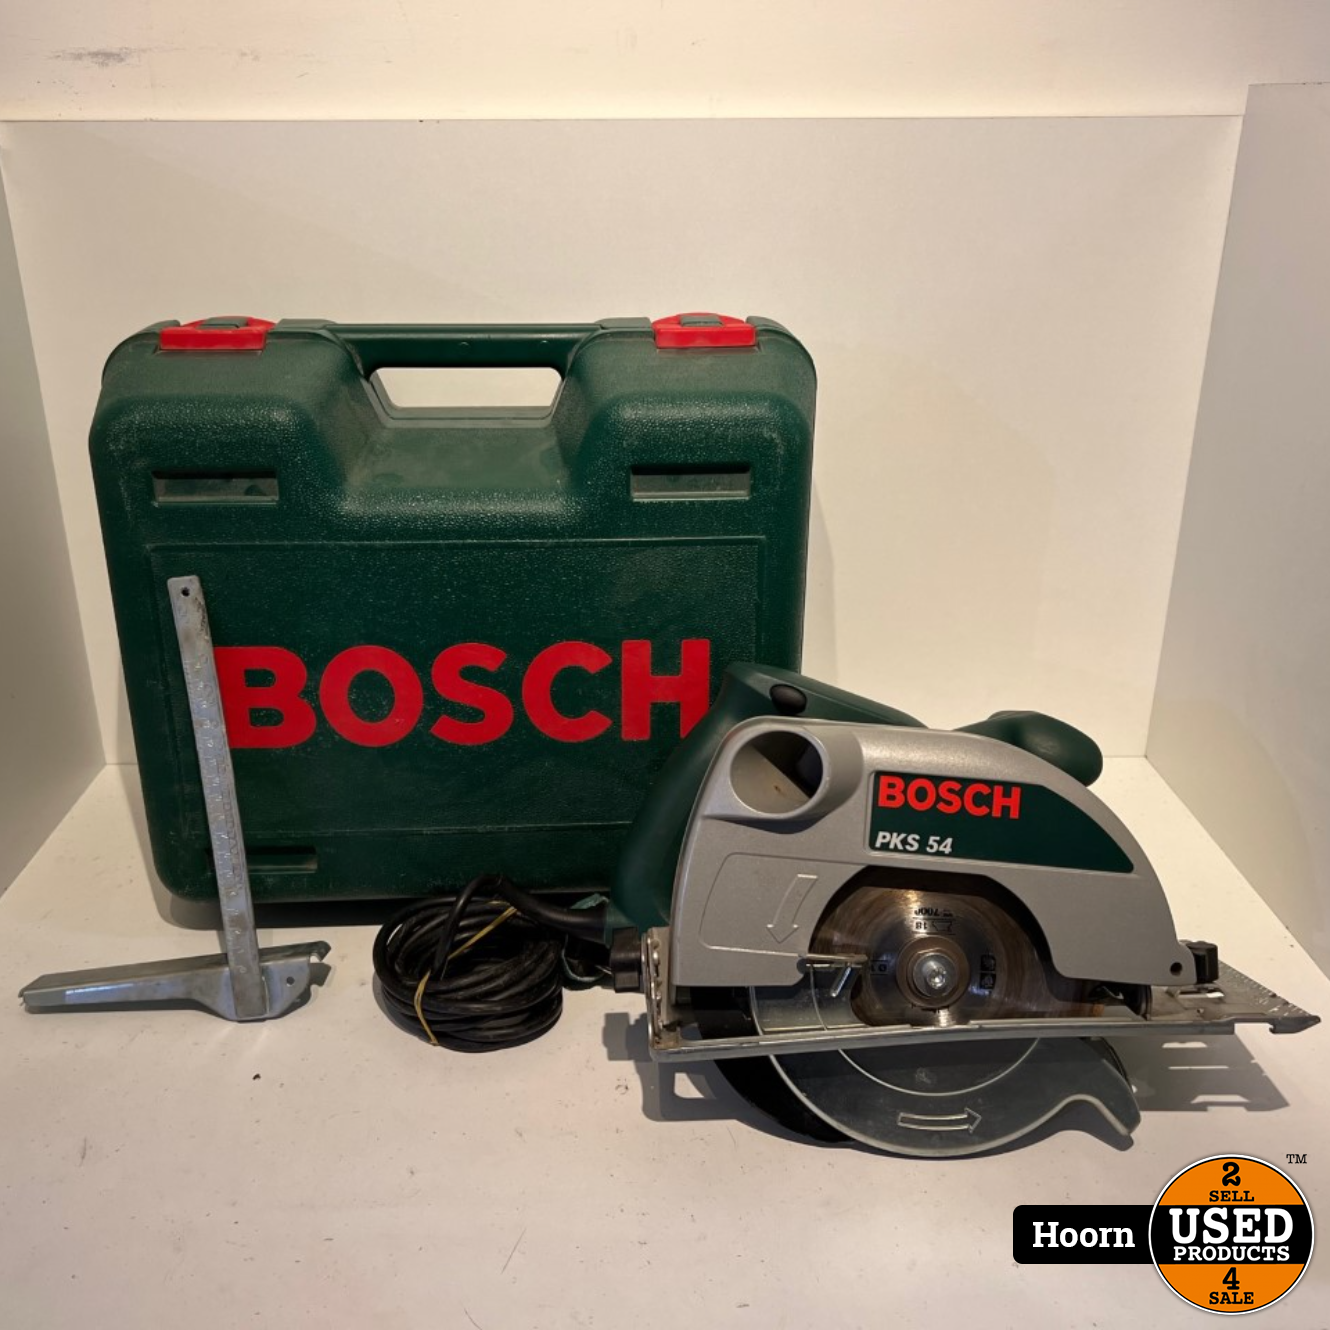 schilder Ophef Booth Bosch PKS 54 Cirkelzaag 1050W in Koffer - Used Products Hoorn